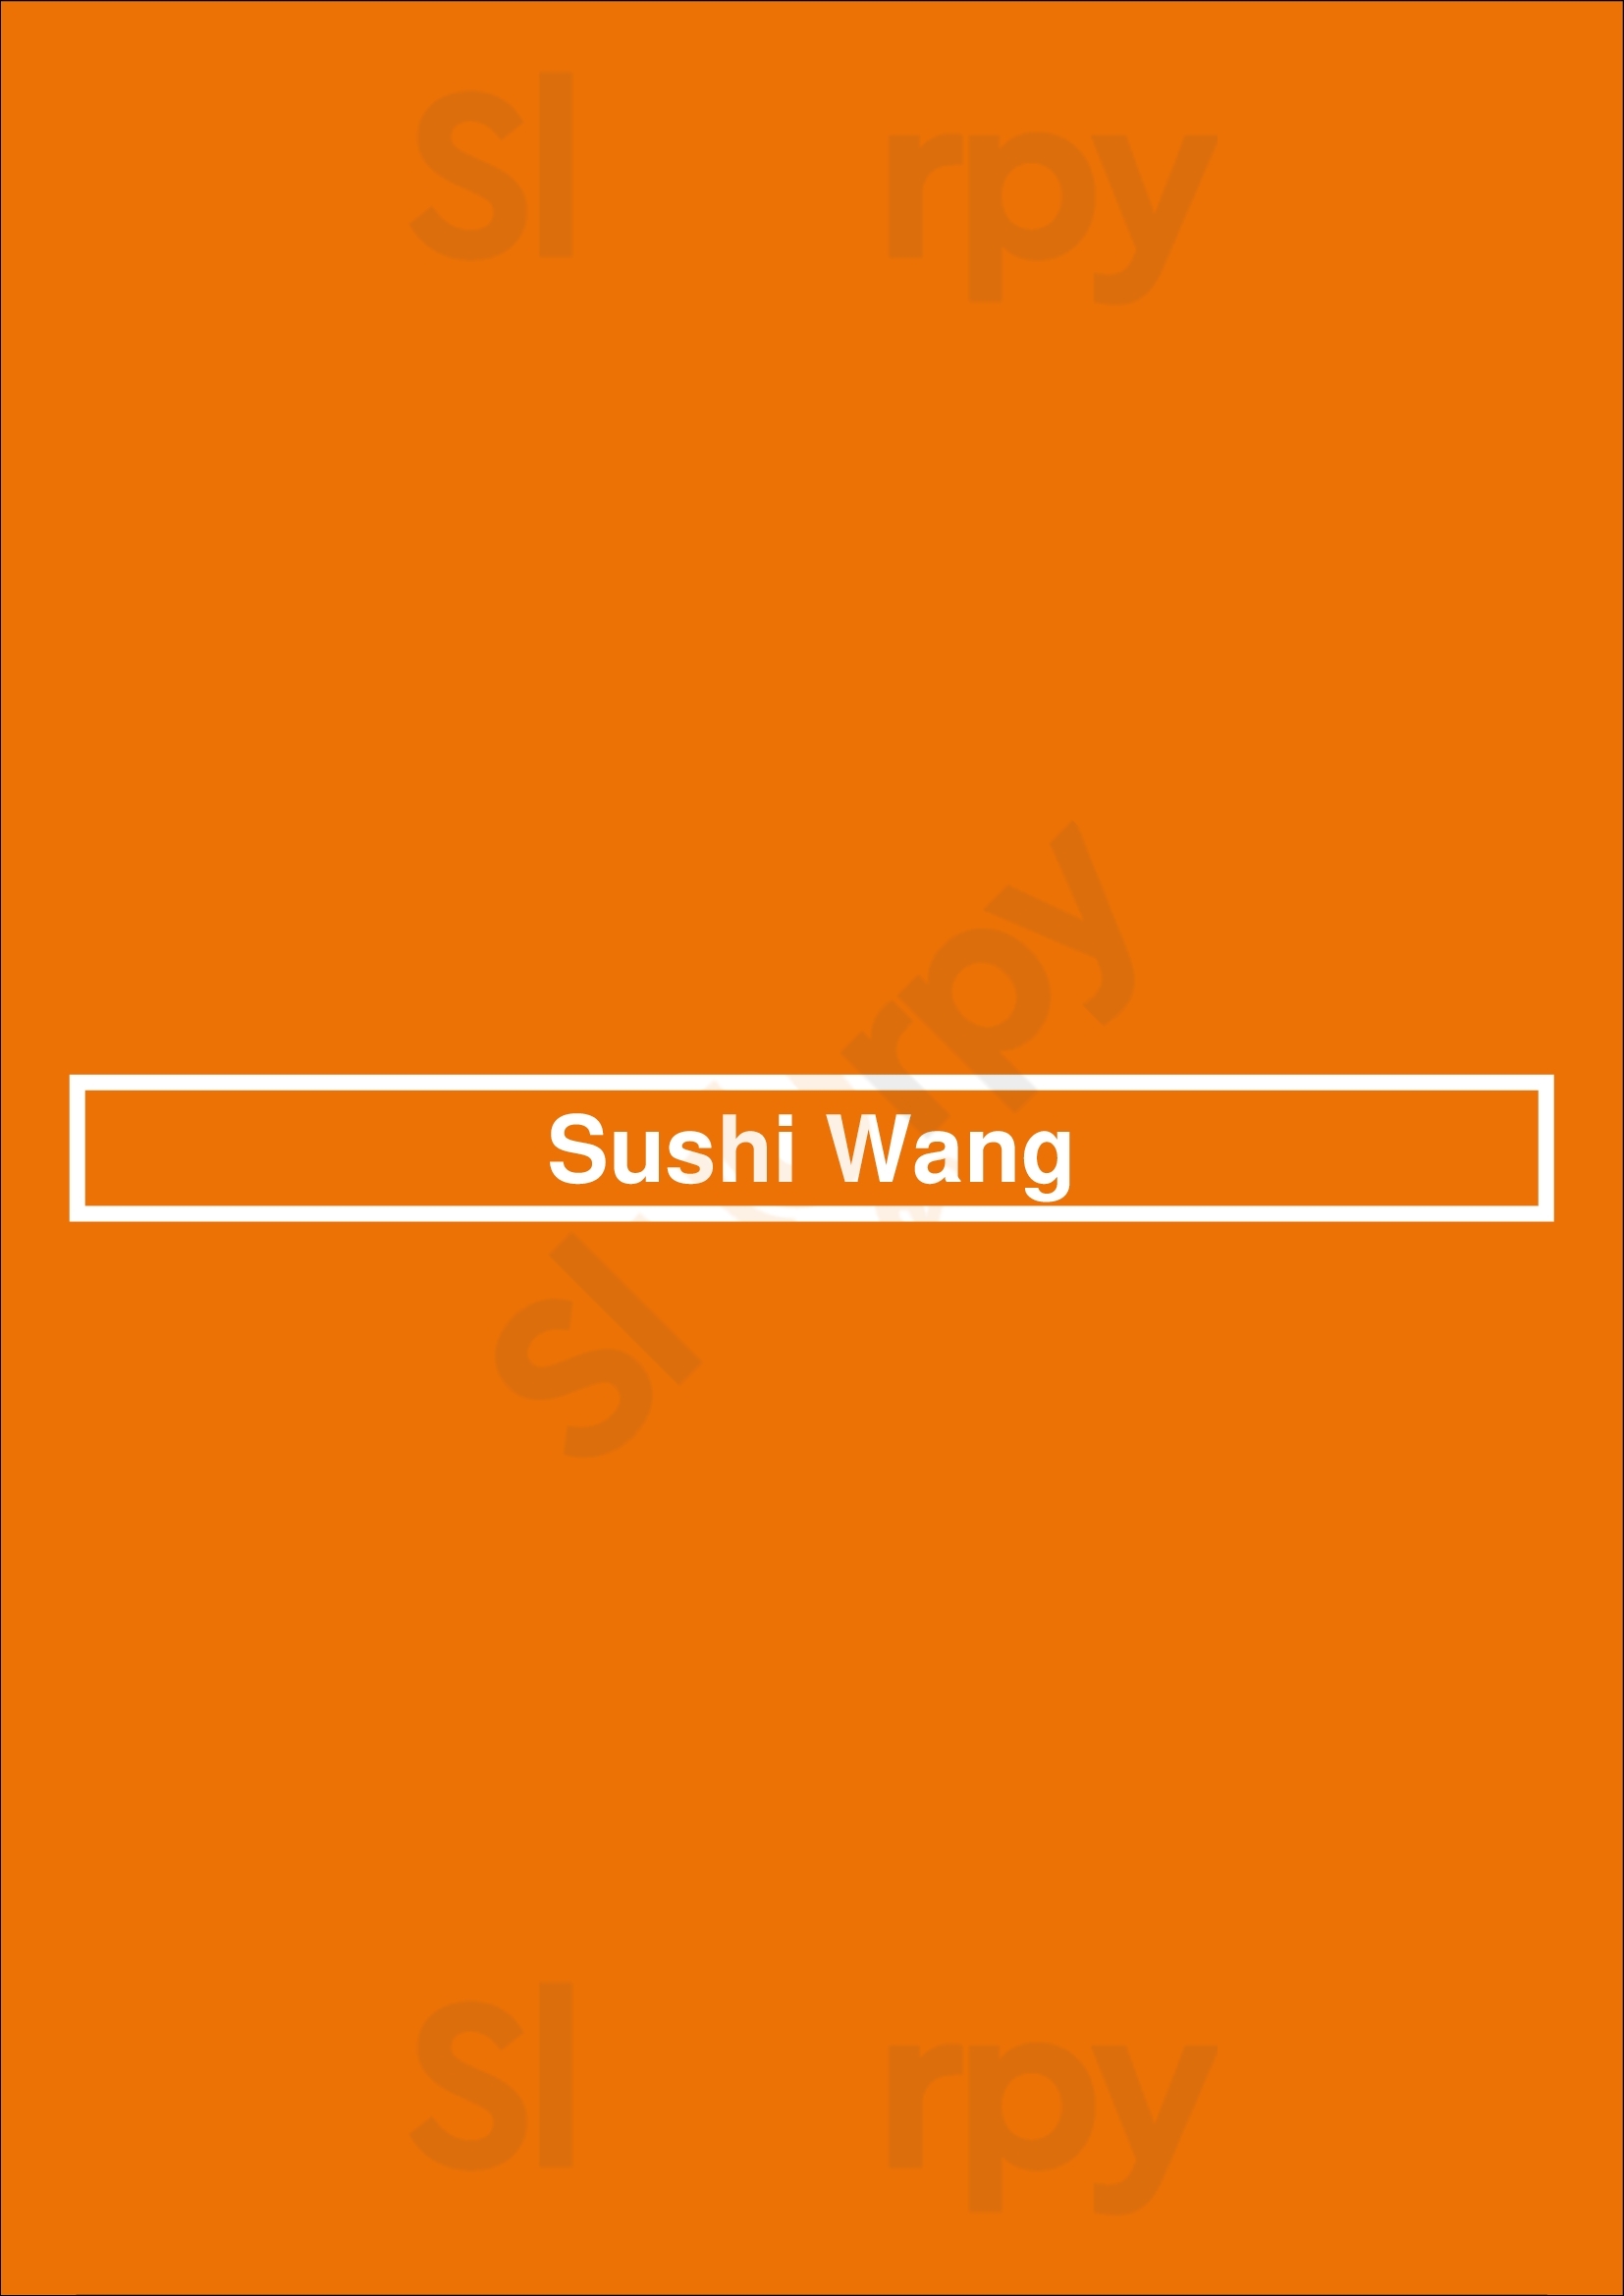 Sushi Wang Utrecht Menu - 1